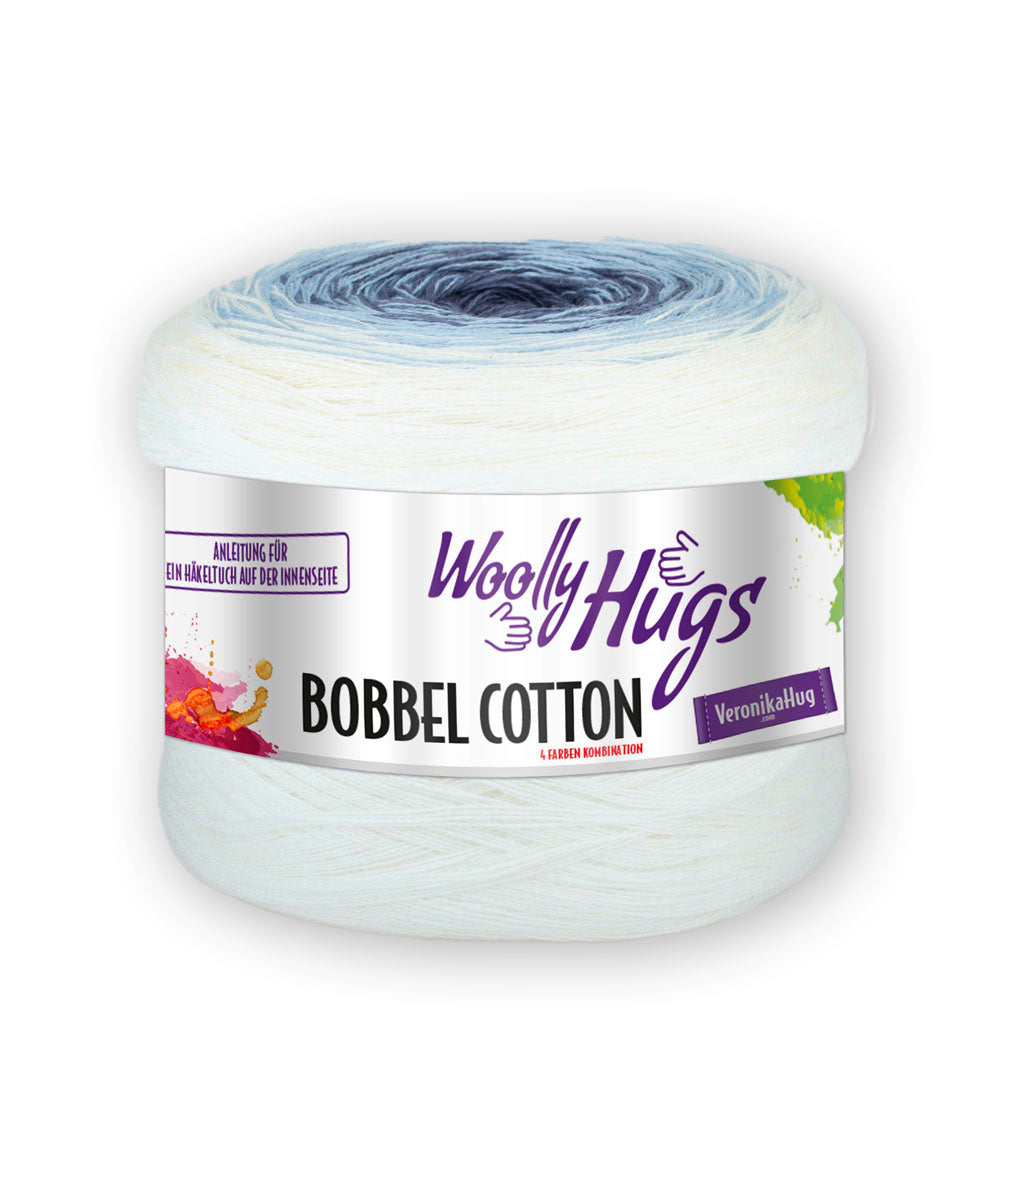 Bobbel Cotton von Woolly Hugs